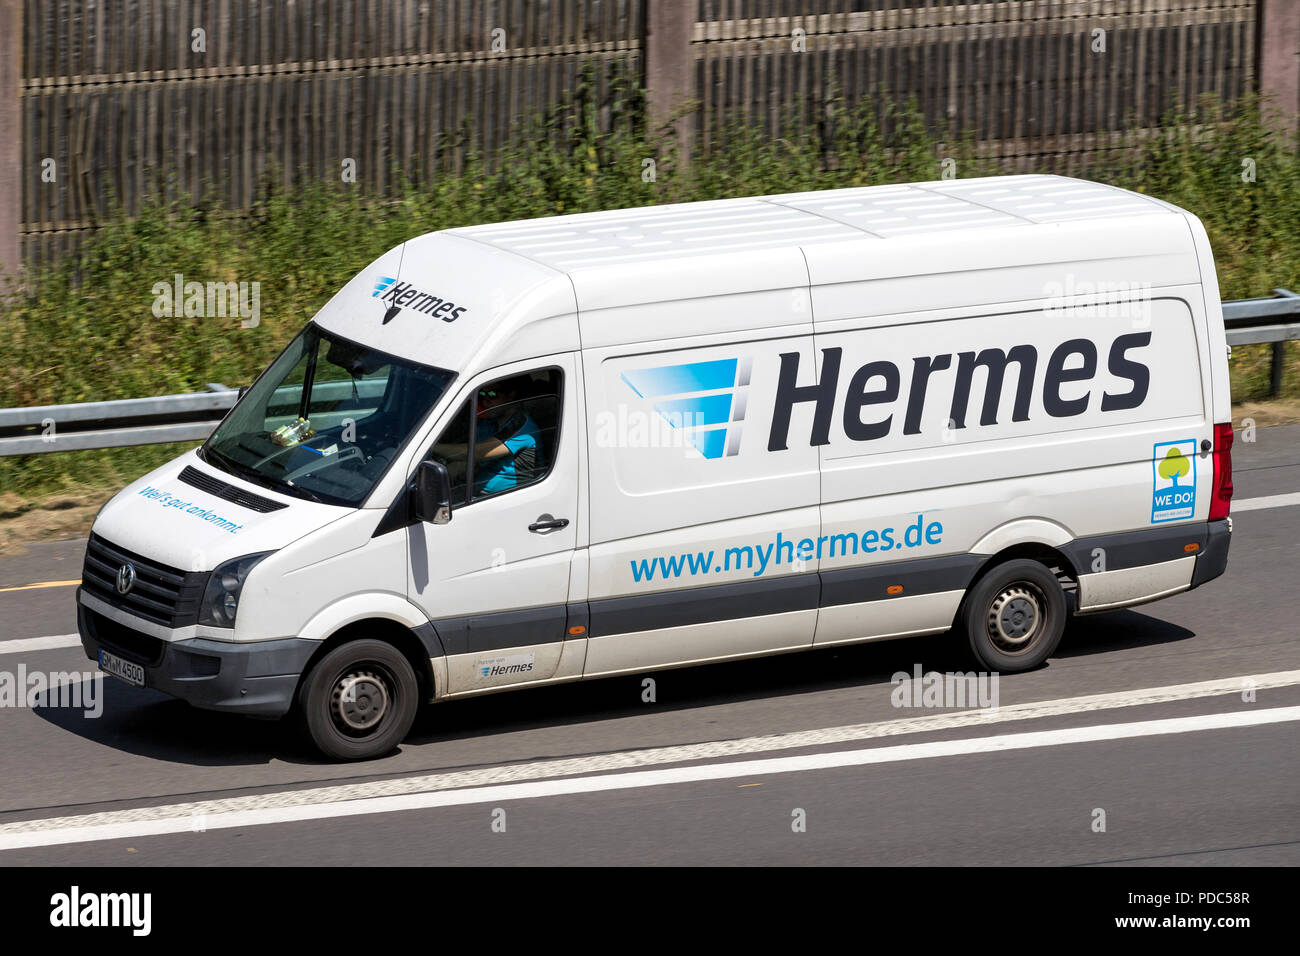 Hermes Versand van auf der Autobahn. Hermes ist der grösste Deutsche Post - unabhängige Anbieter von Lieferungen an private Kunden. Stockfoto